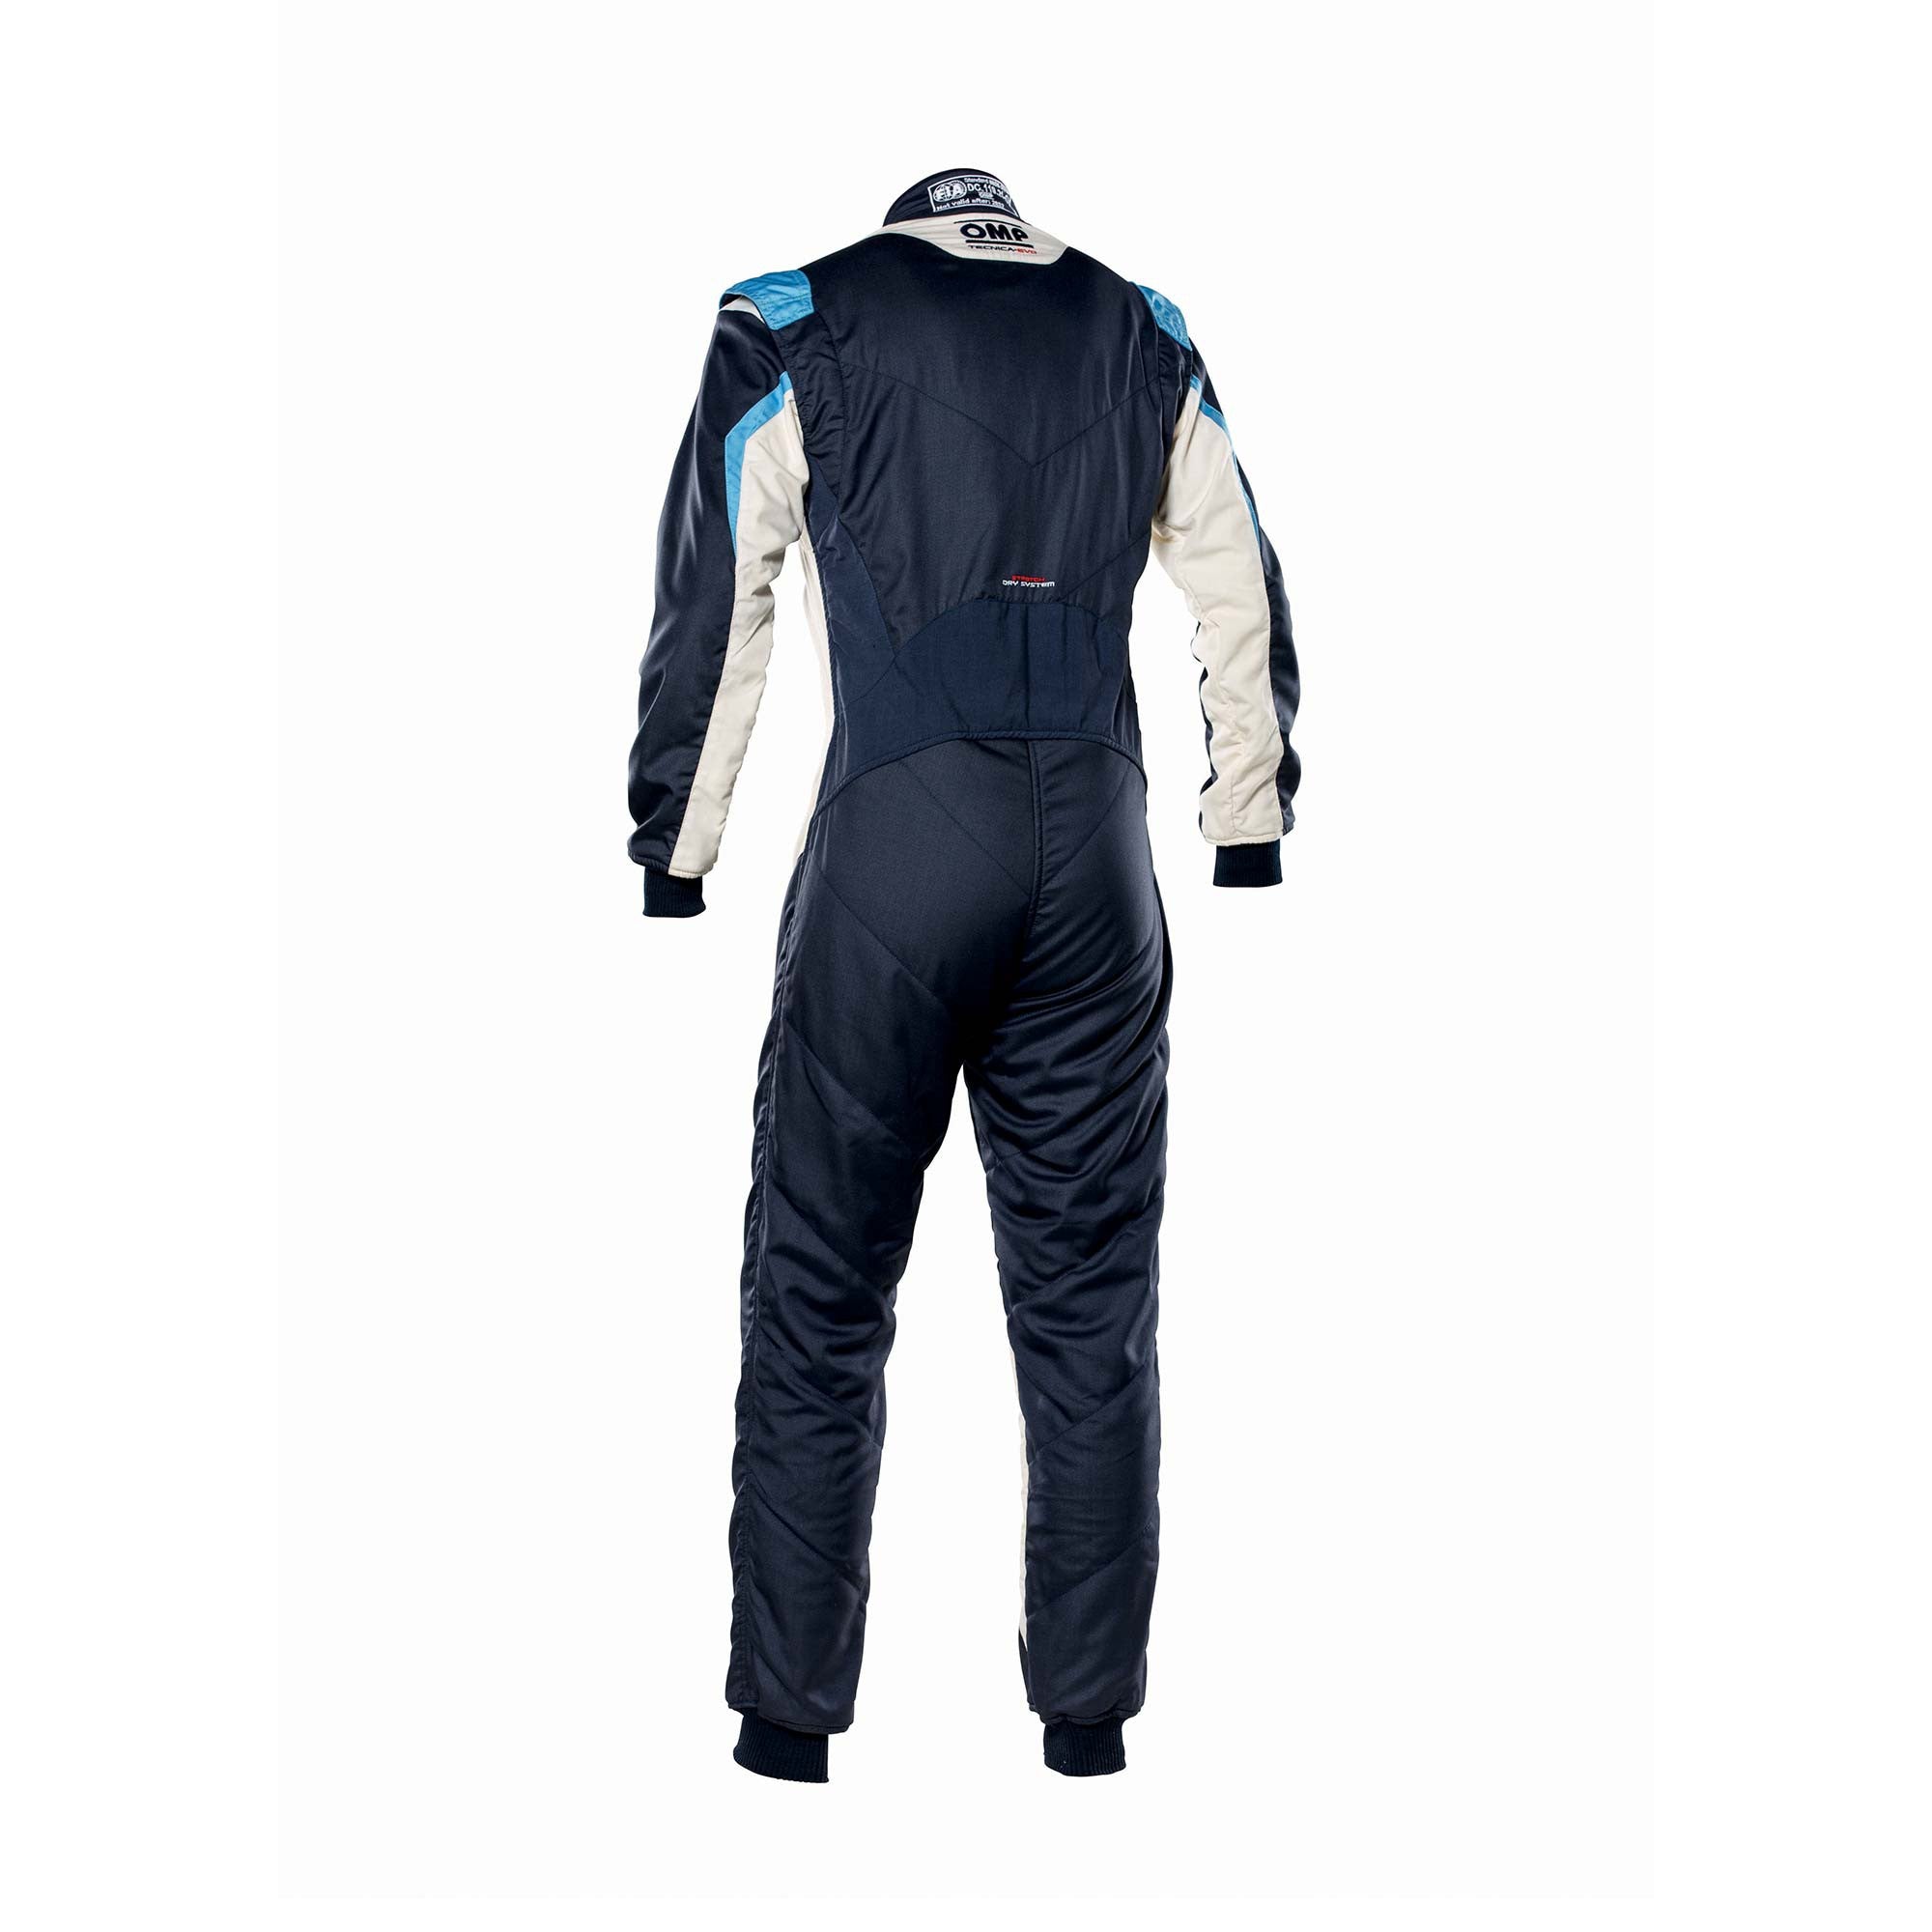 OMP IA0-1859-B01-246-44 Racing suit TECNICA EVO MY2021, FIA 8856-2018, navy blue/white/grey/cyan, size 44 Photo-1 